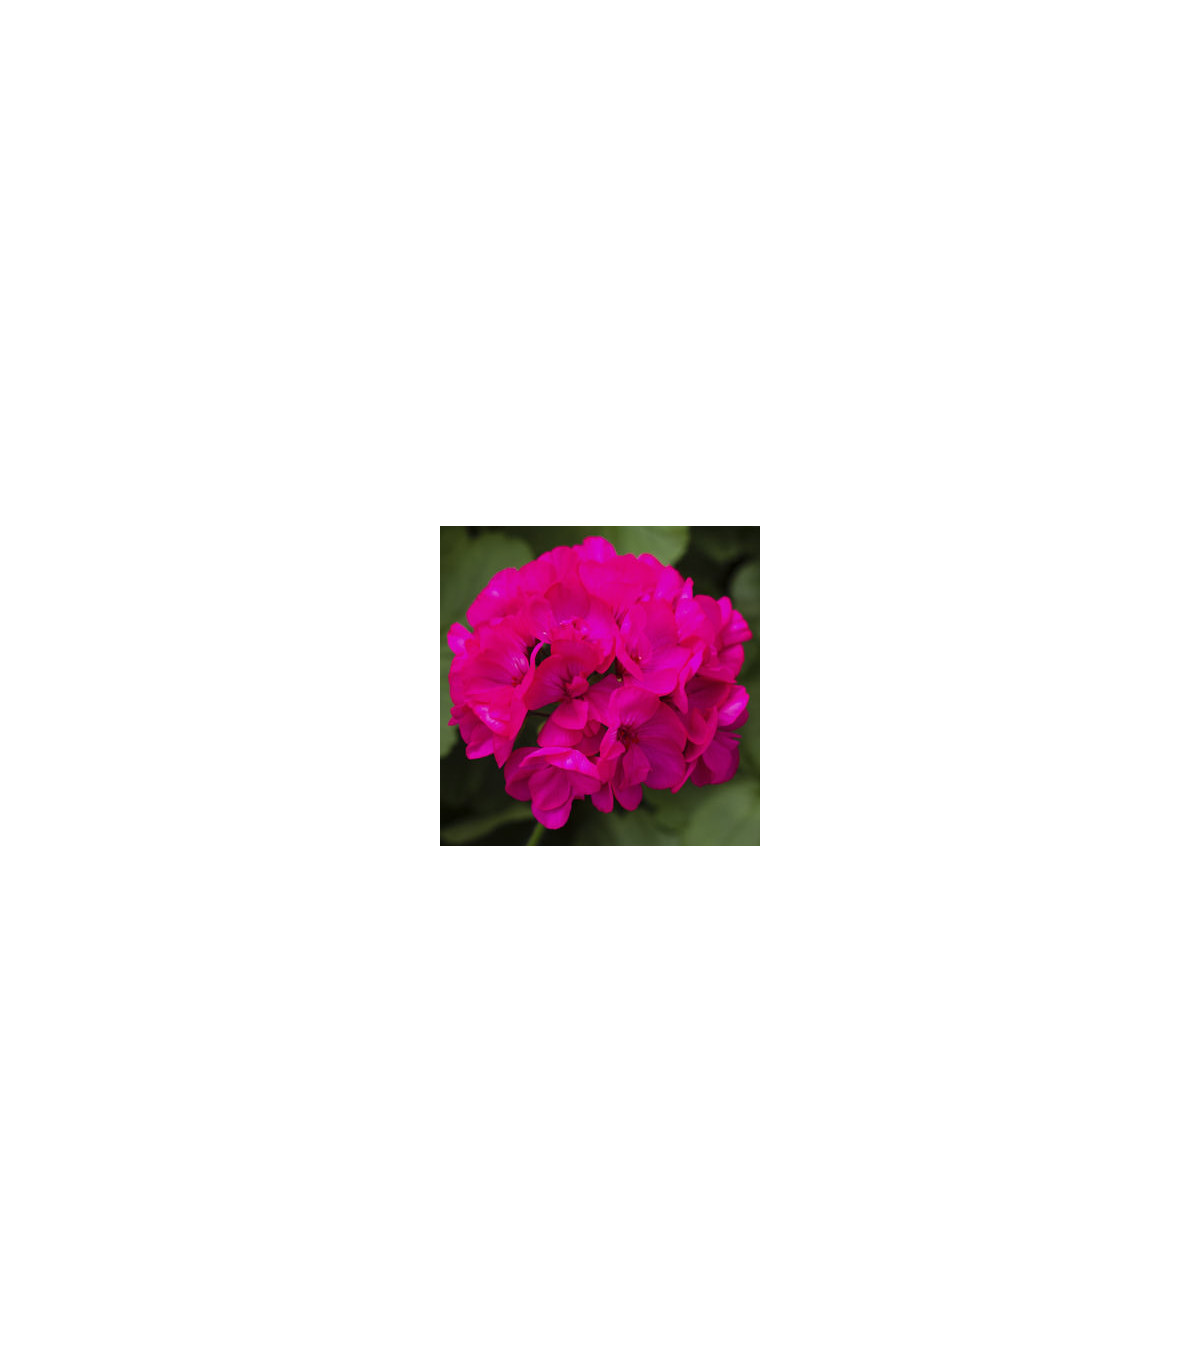 Muškát páskatý Nekita Deep Rose F1 - Pelargonium zonale - osivo muškátu - 4 ks